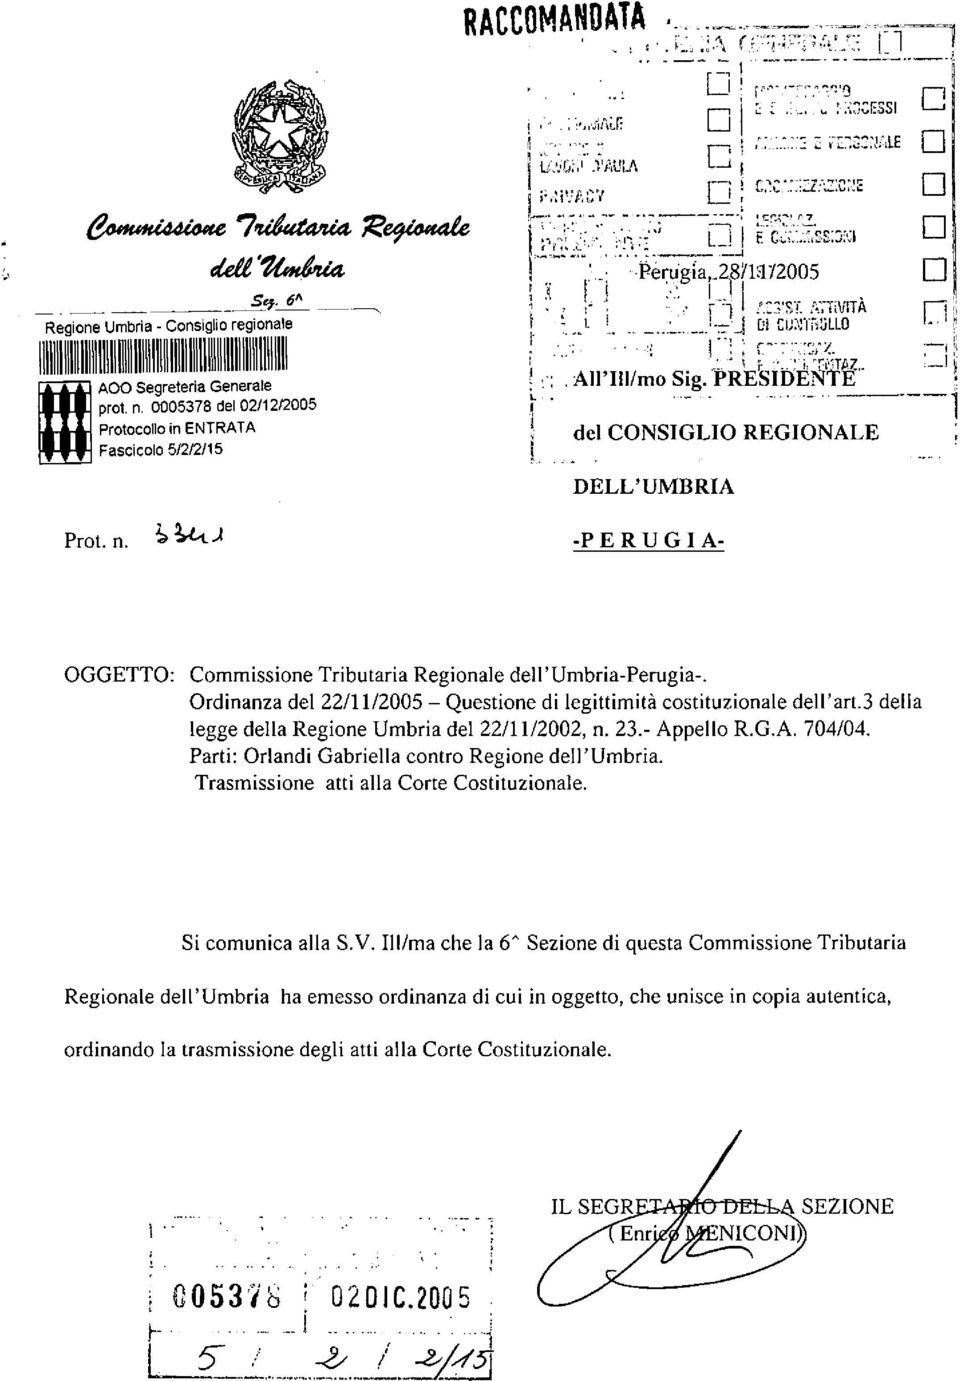 Ordinanza del 22/11/2005 - Questione di legittimità costituzionale dell'art.3 della legge della Regione Umbria del 22/11/2002, n. 23.- Appello R.GA 704/04.